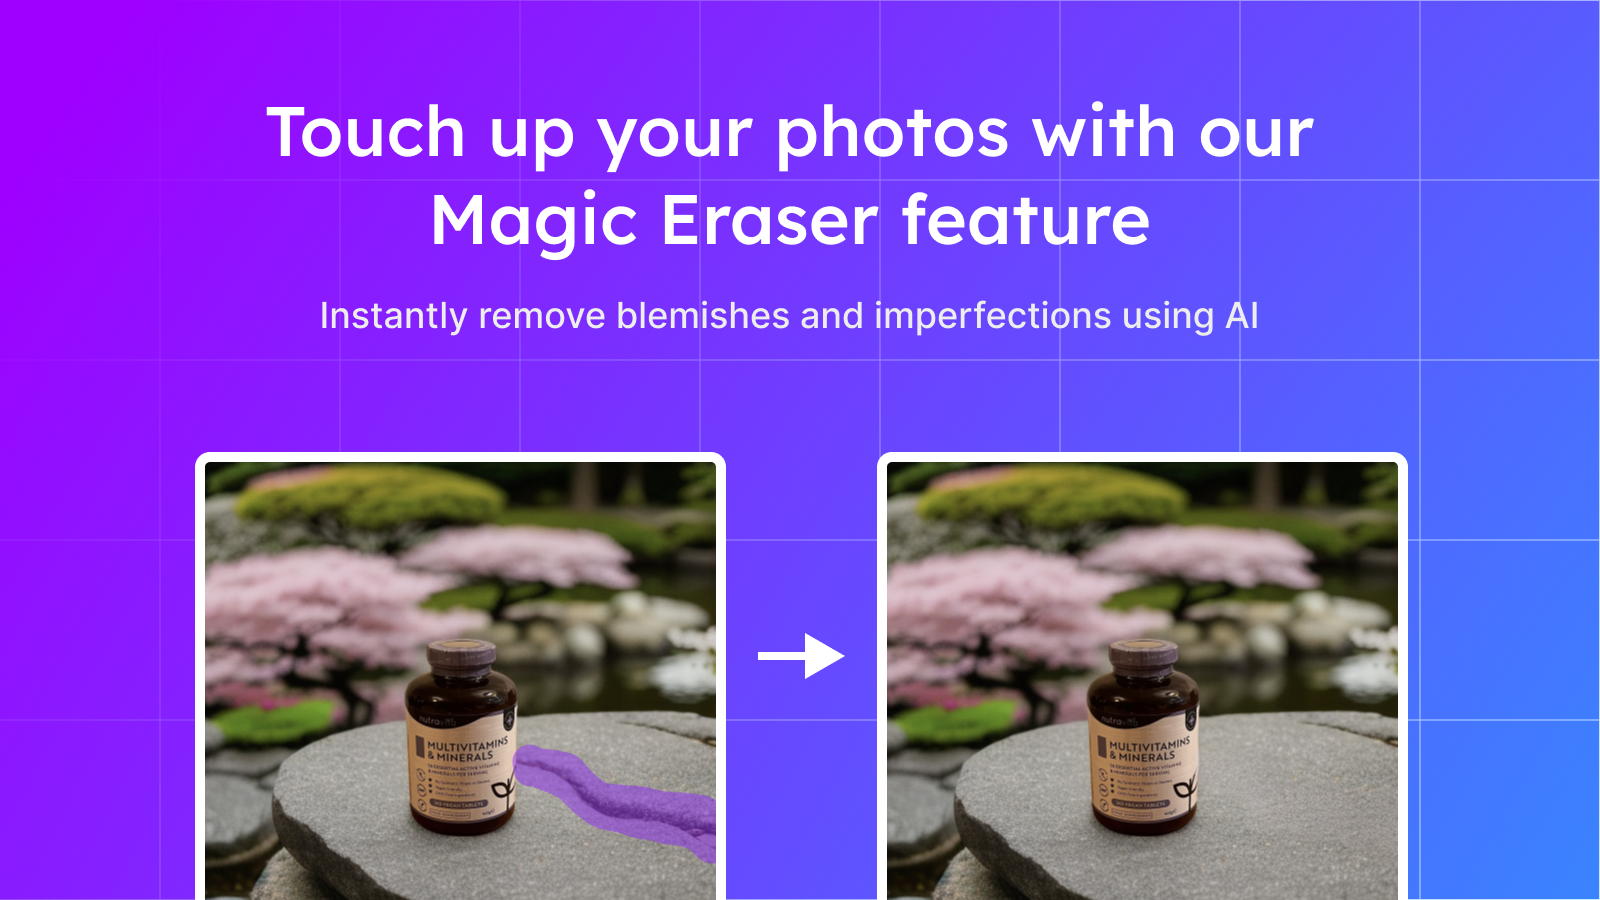 Rätta till dina foton med vår Magic Eraser funktion